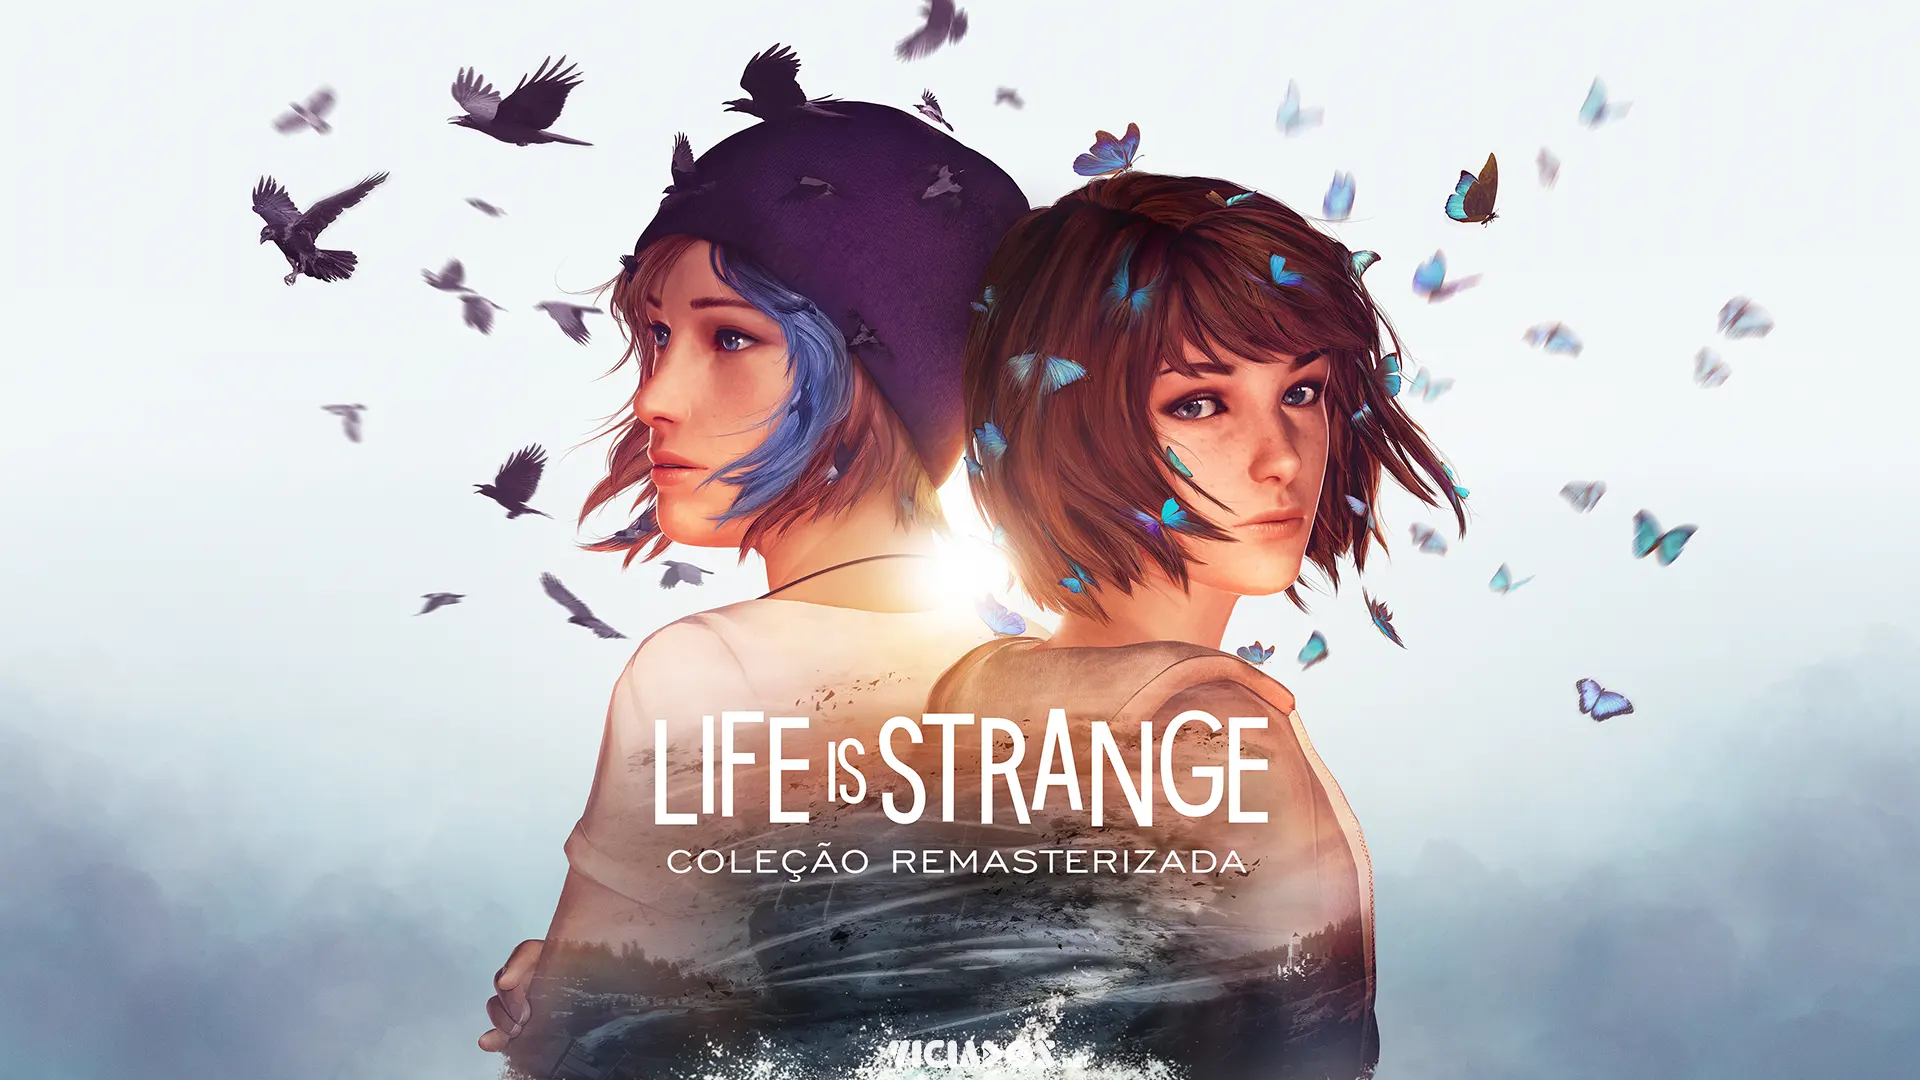 Coleção Remasterizada de Life is Strange é lançada oficialmente 2022 Viciados